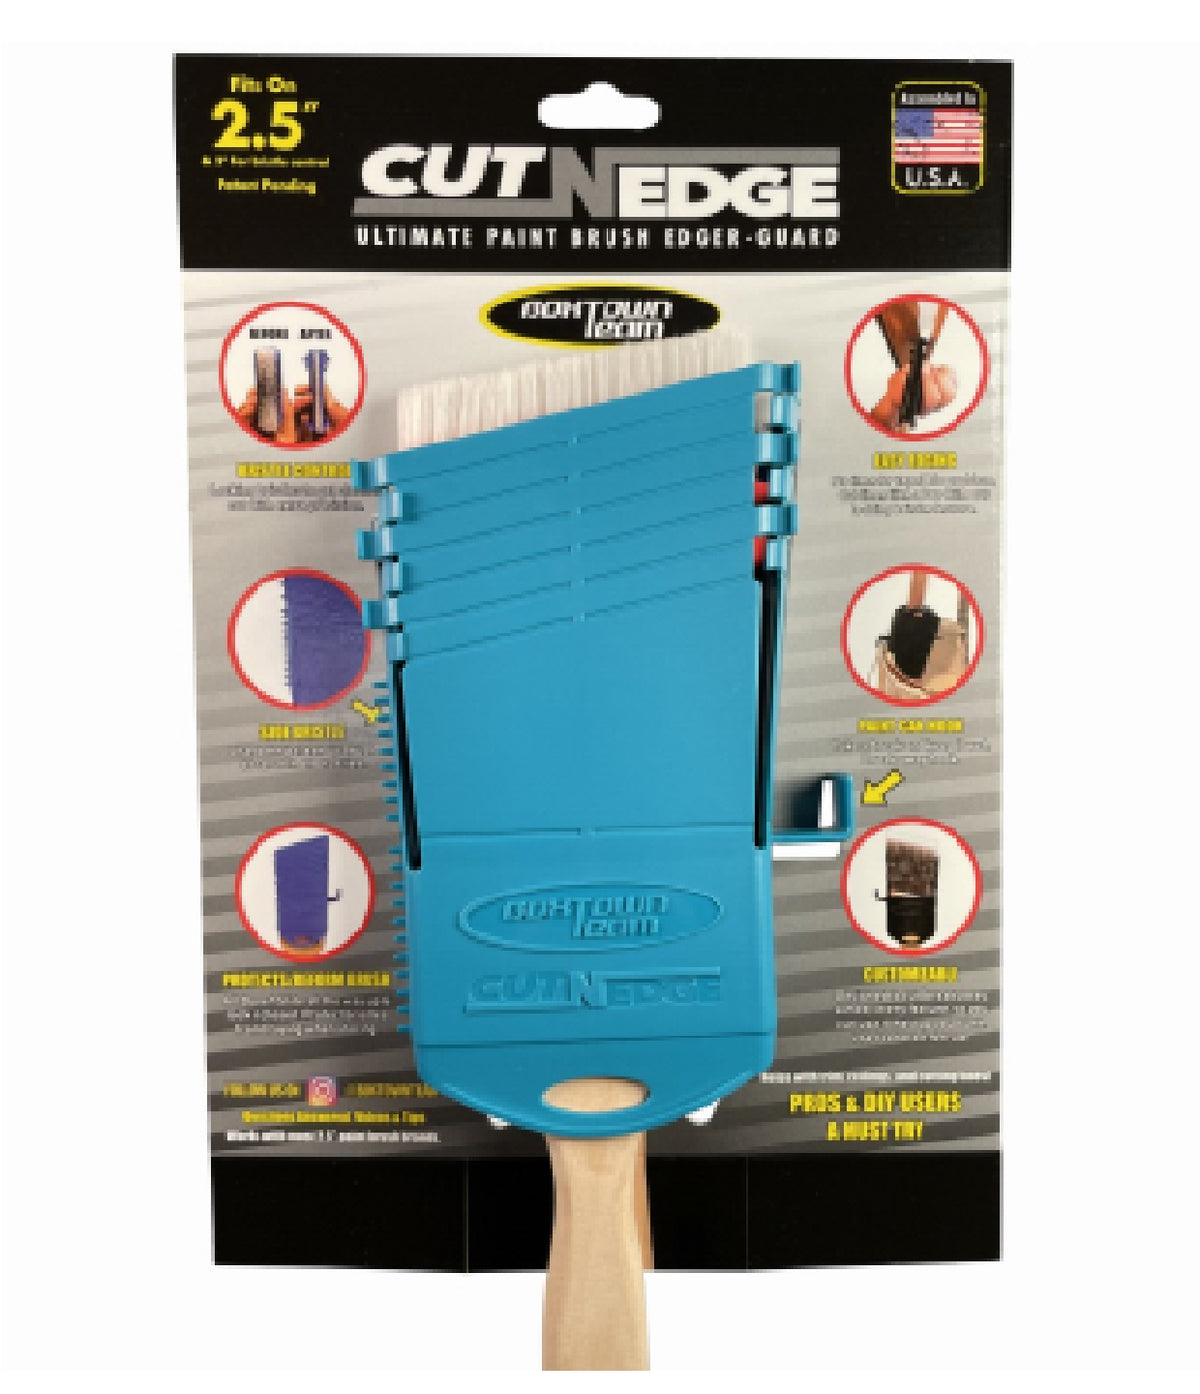 Boxtown Team CNEAB-A001 Cut-N-Edge Ultimate Paint Brush Edger and Guard, Blue